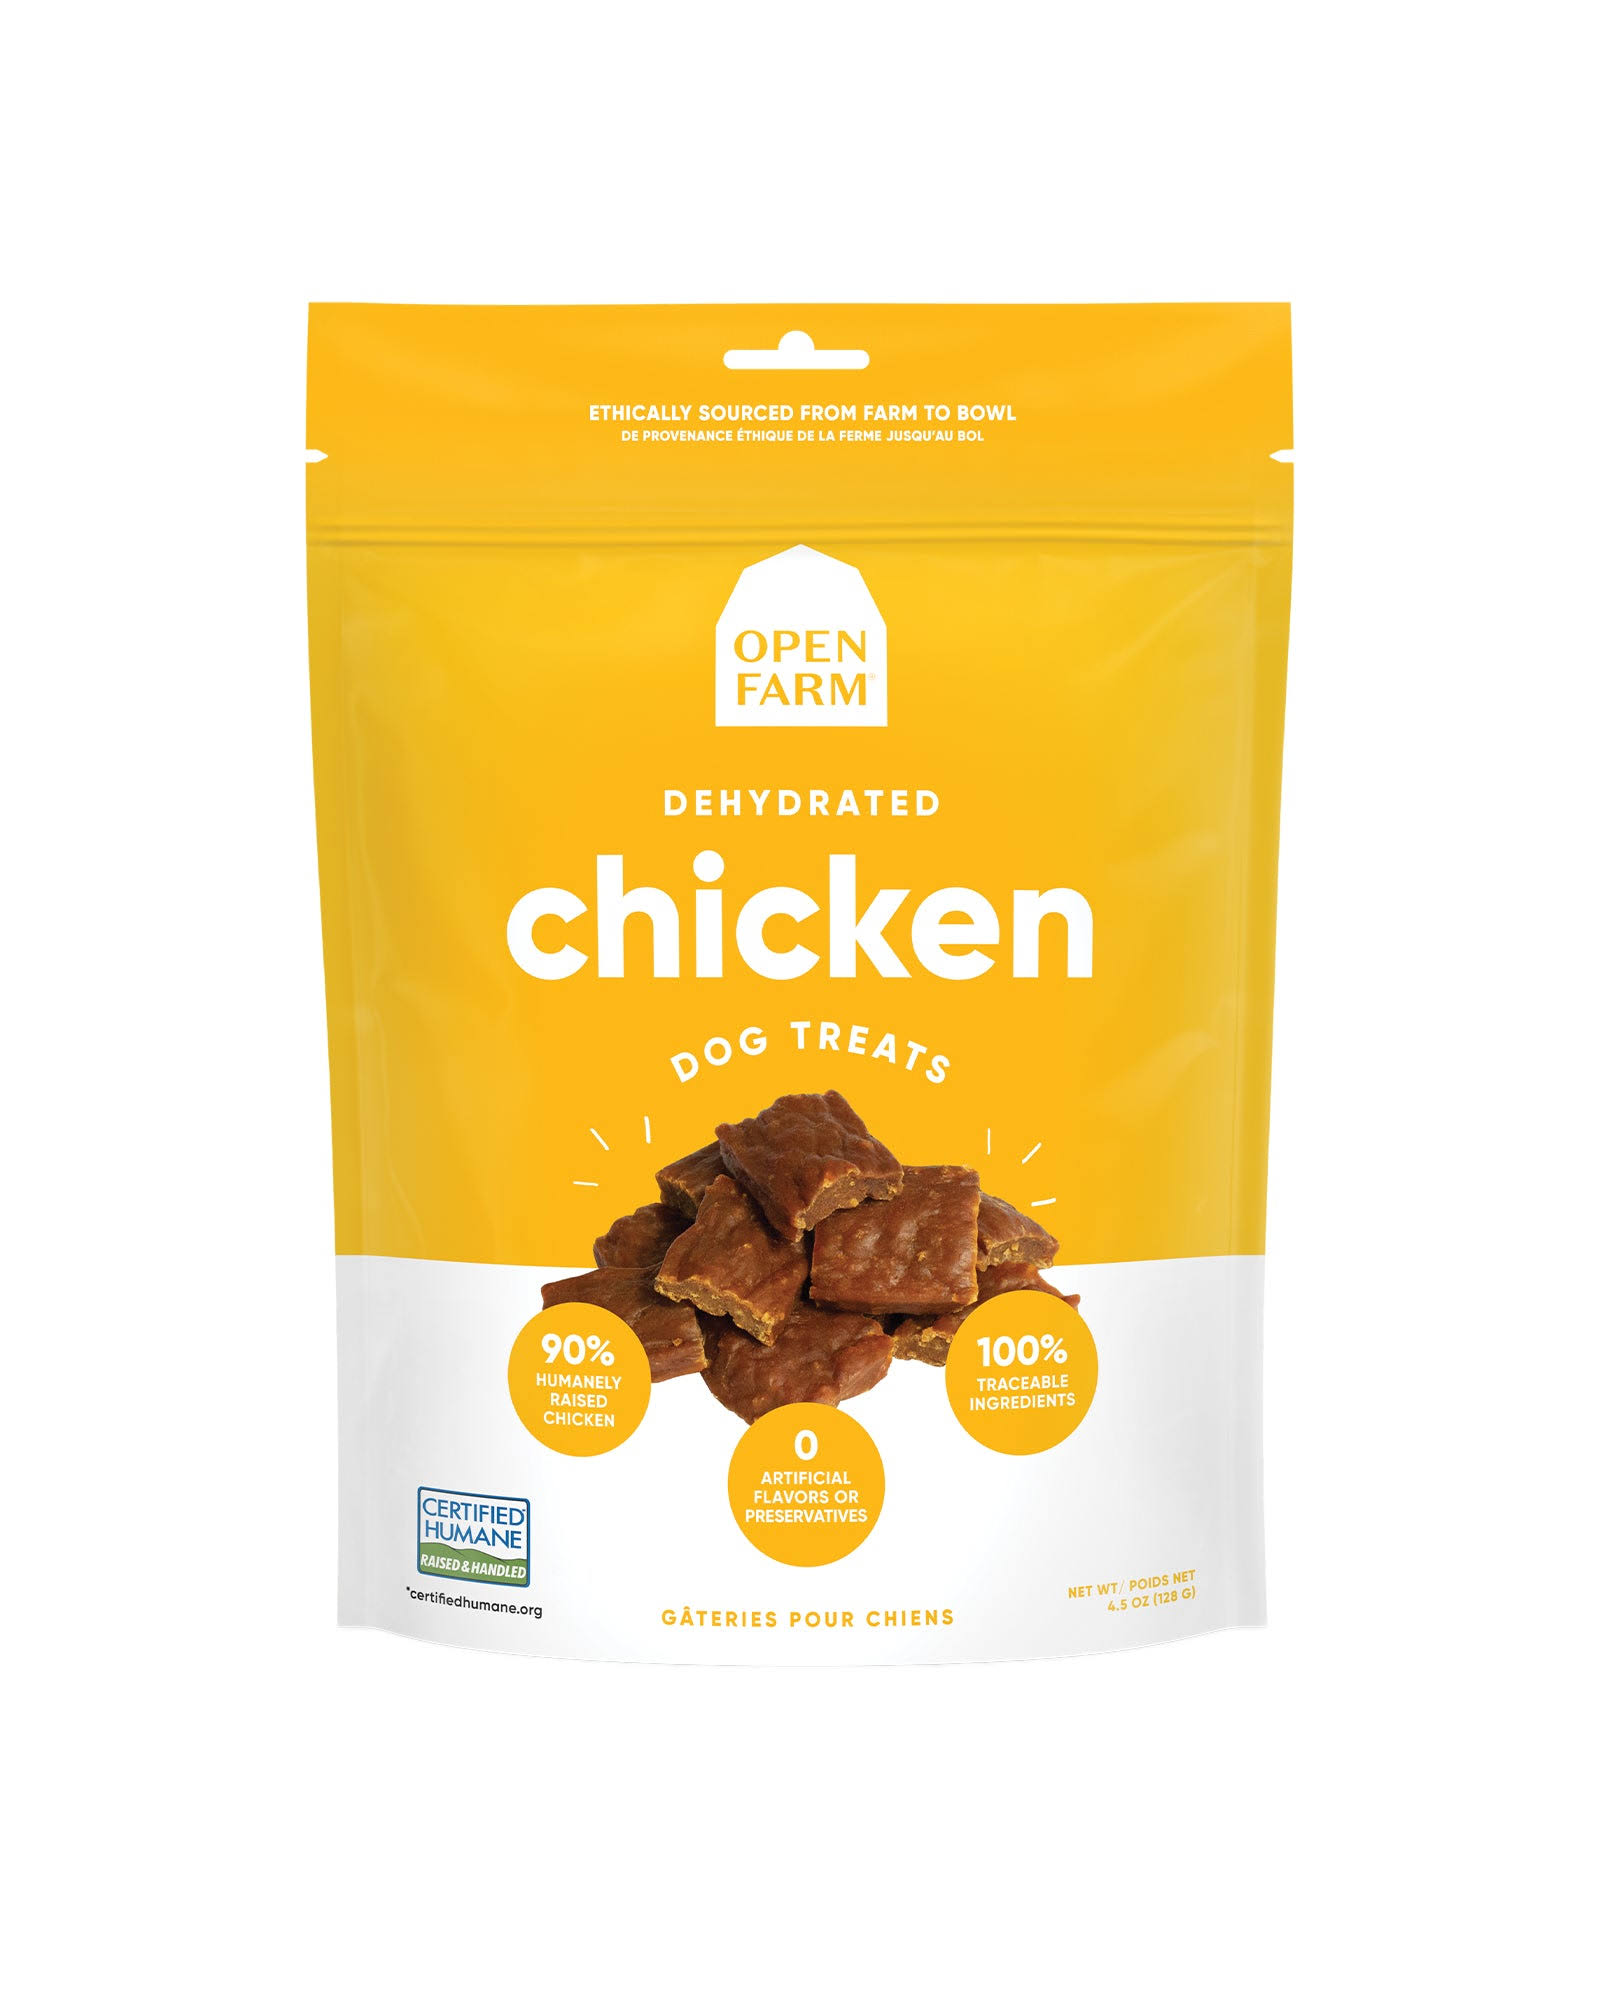 Open Farm Chicken Dehydrated Dog Treats, 4.5-oz